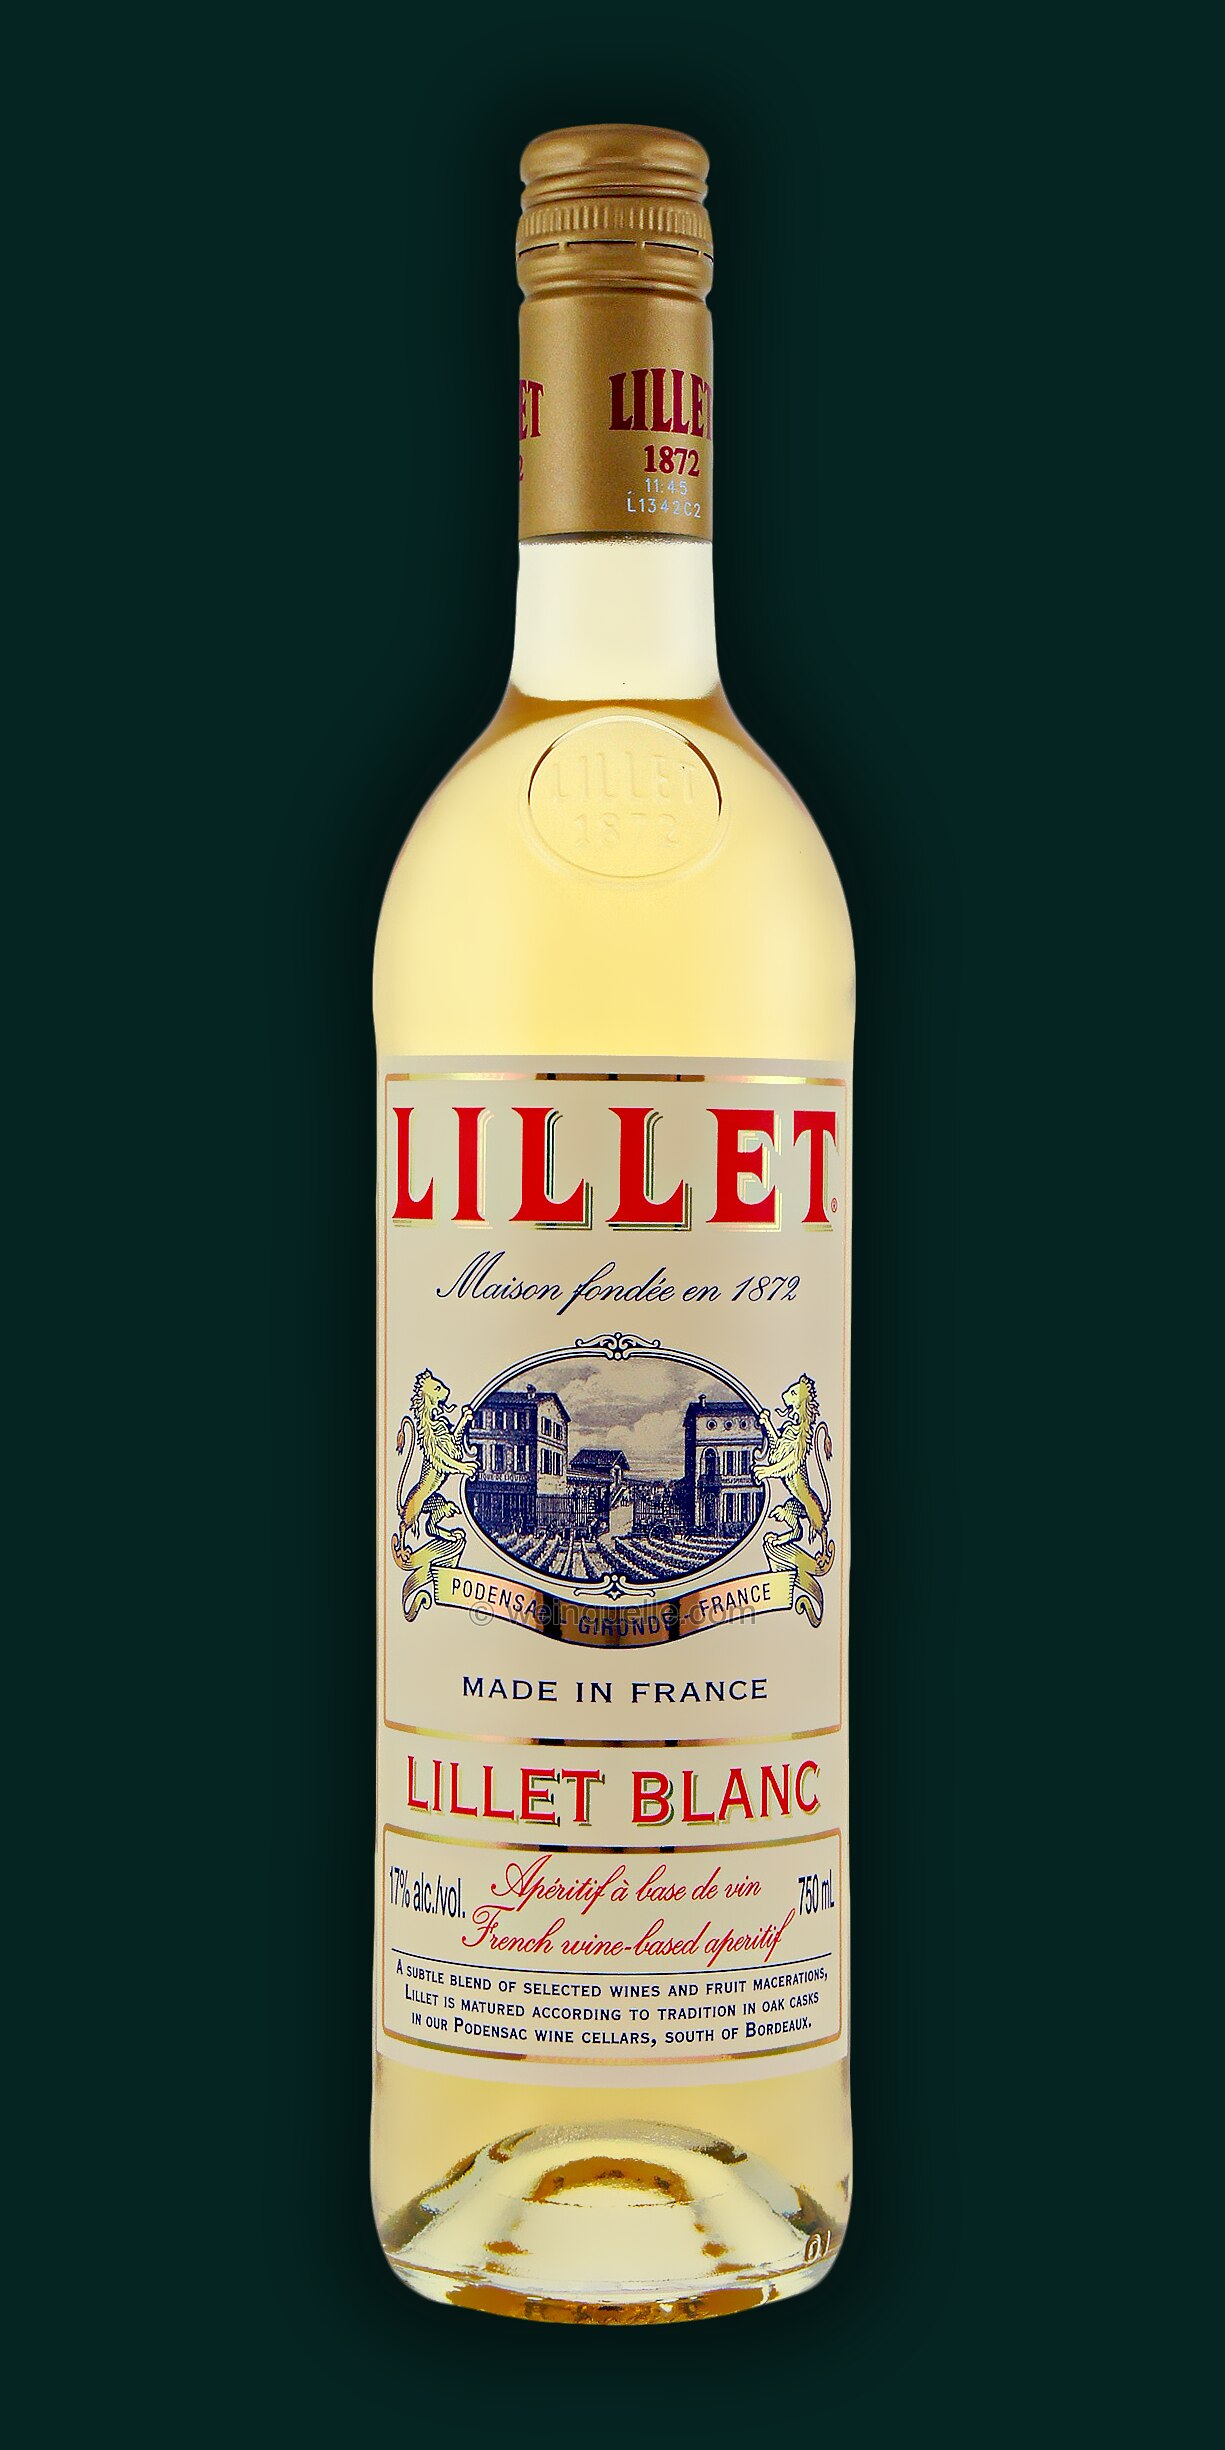 € 16,50 - Lühmann Weinquelle blanc, Lillet